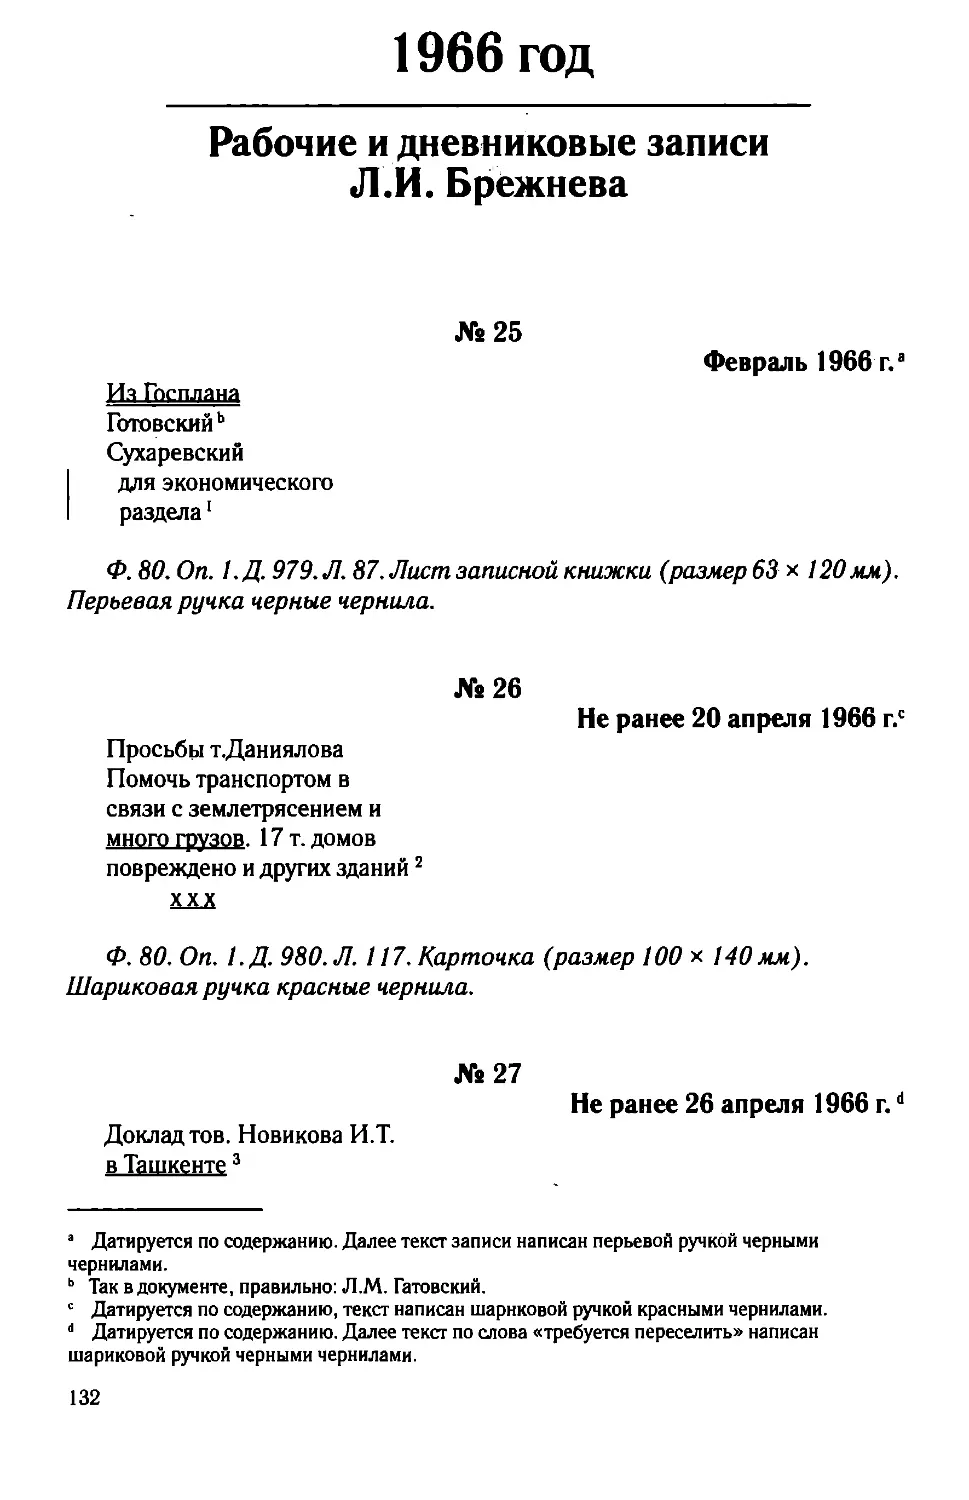 Рабочие и дневниковые записи Л.И. Брежнева. 1966 год